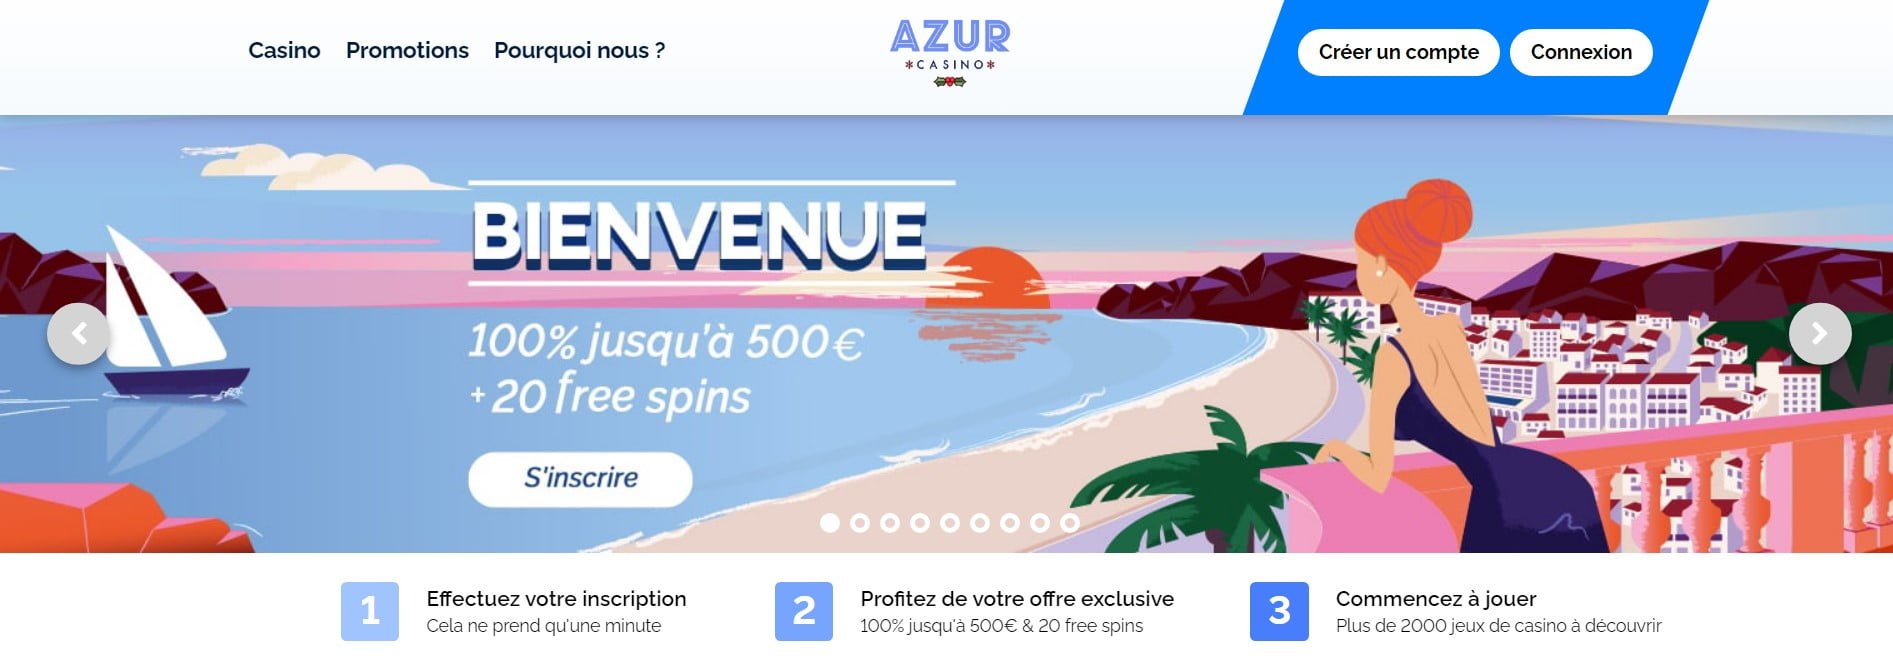 Azur Casino Bonos y Promociones